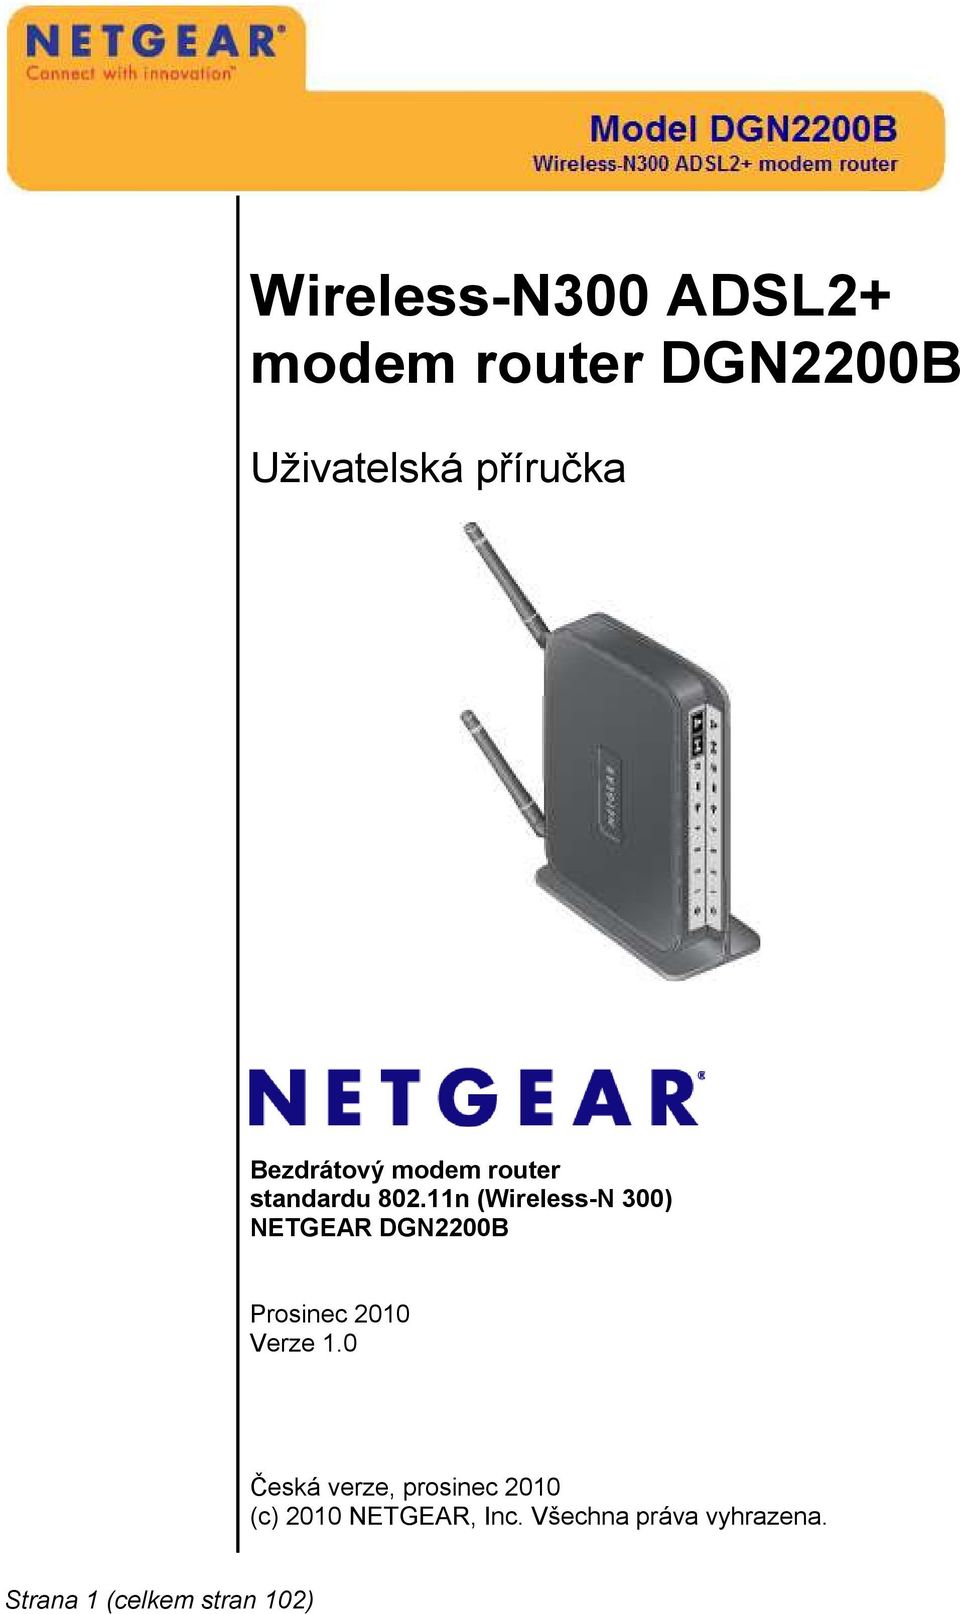 11n (Wireless-N 300) NETGEAR DGN2200B Prosinec 2010 Verze 1.